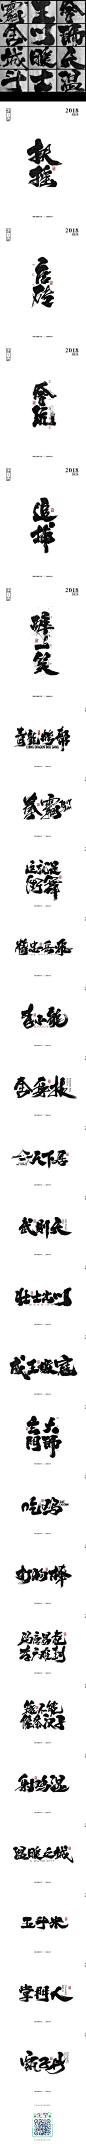 刘迪BRUCE-八月书法字体-字体传奇网-中国首个字体品牌设计师交流网